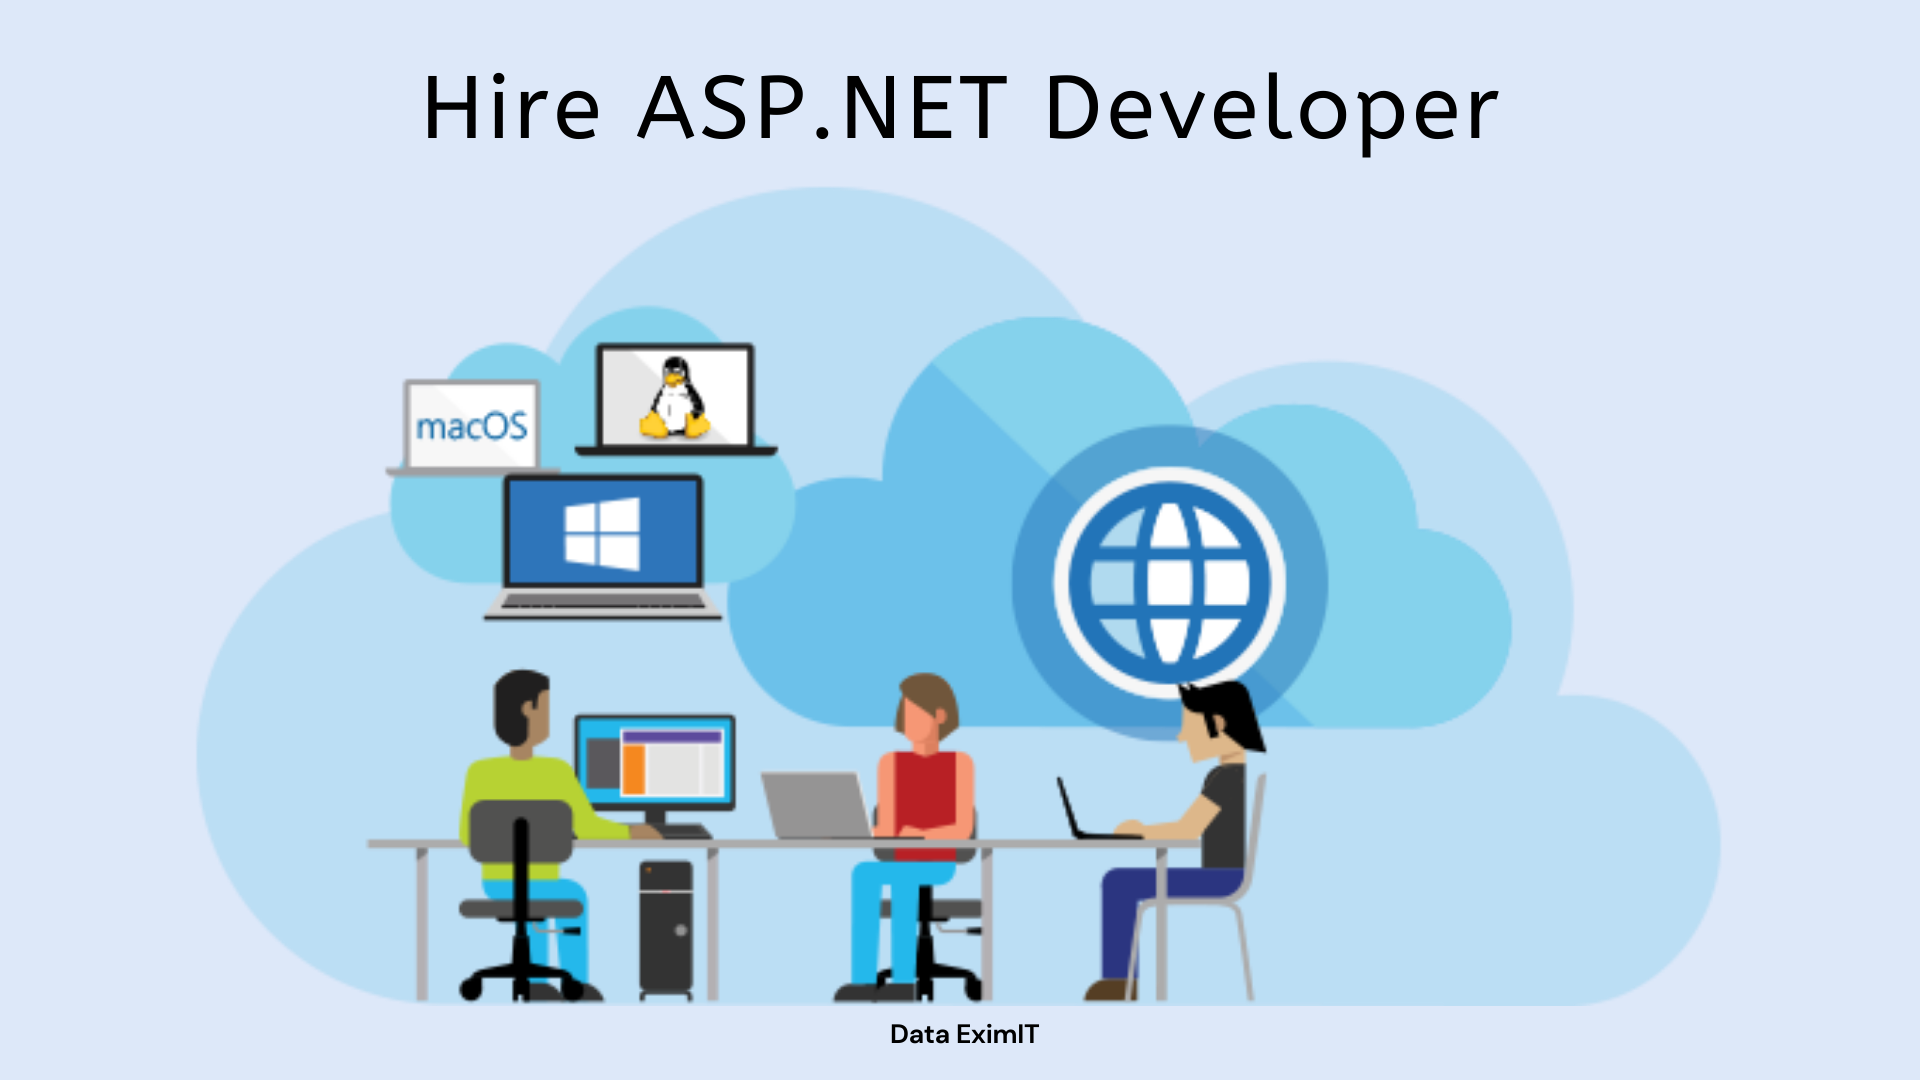 Hiring ASP.NET Developers